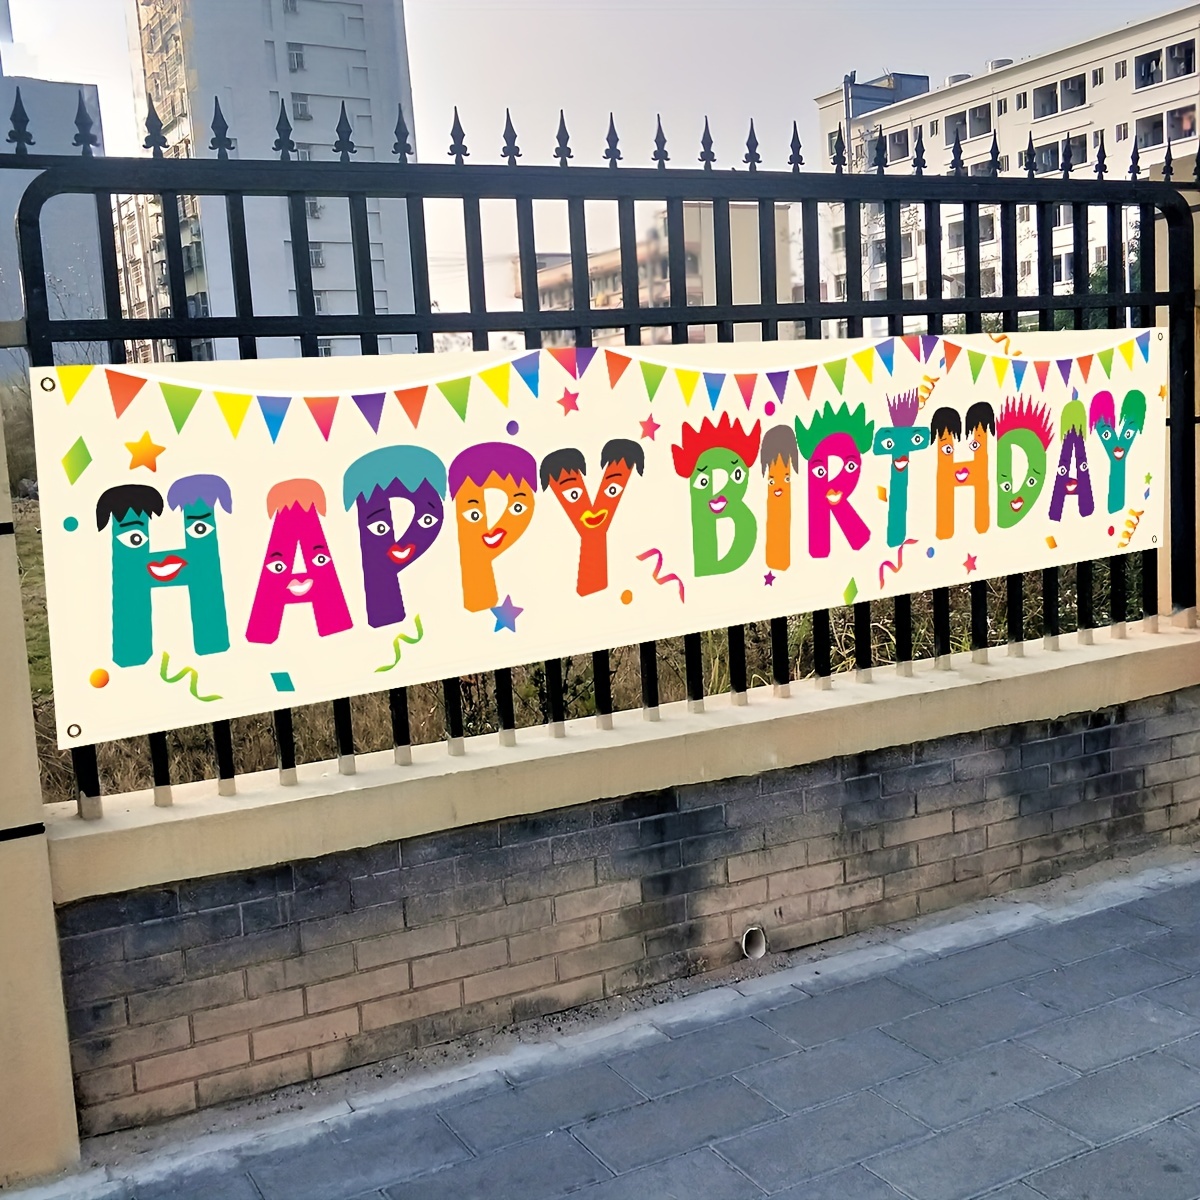 Fecedy Banderines coloridos de feliz cumpleaños